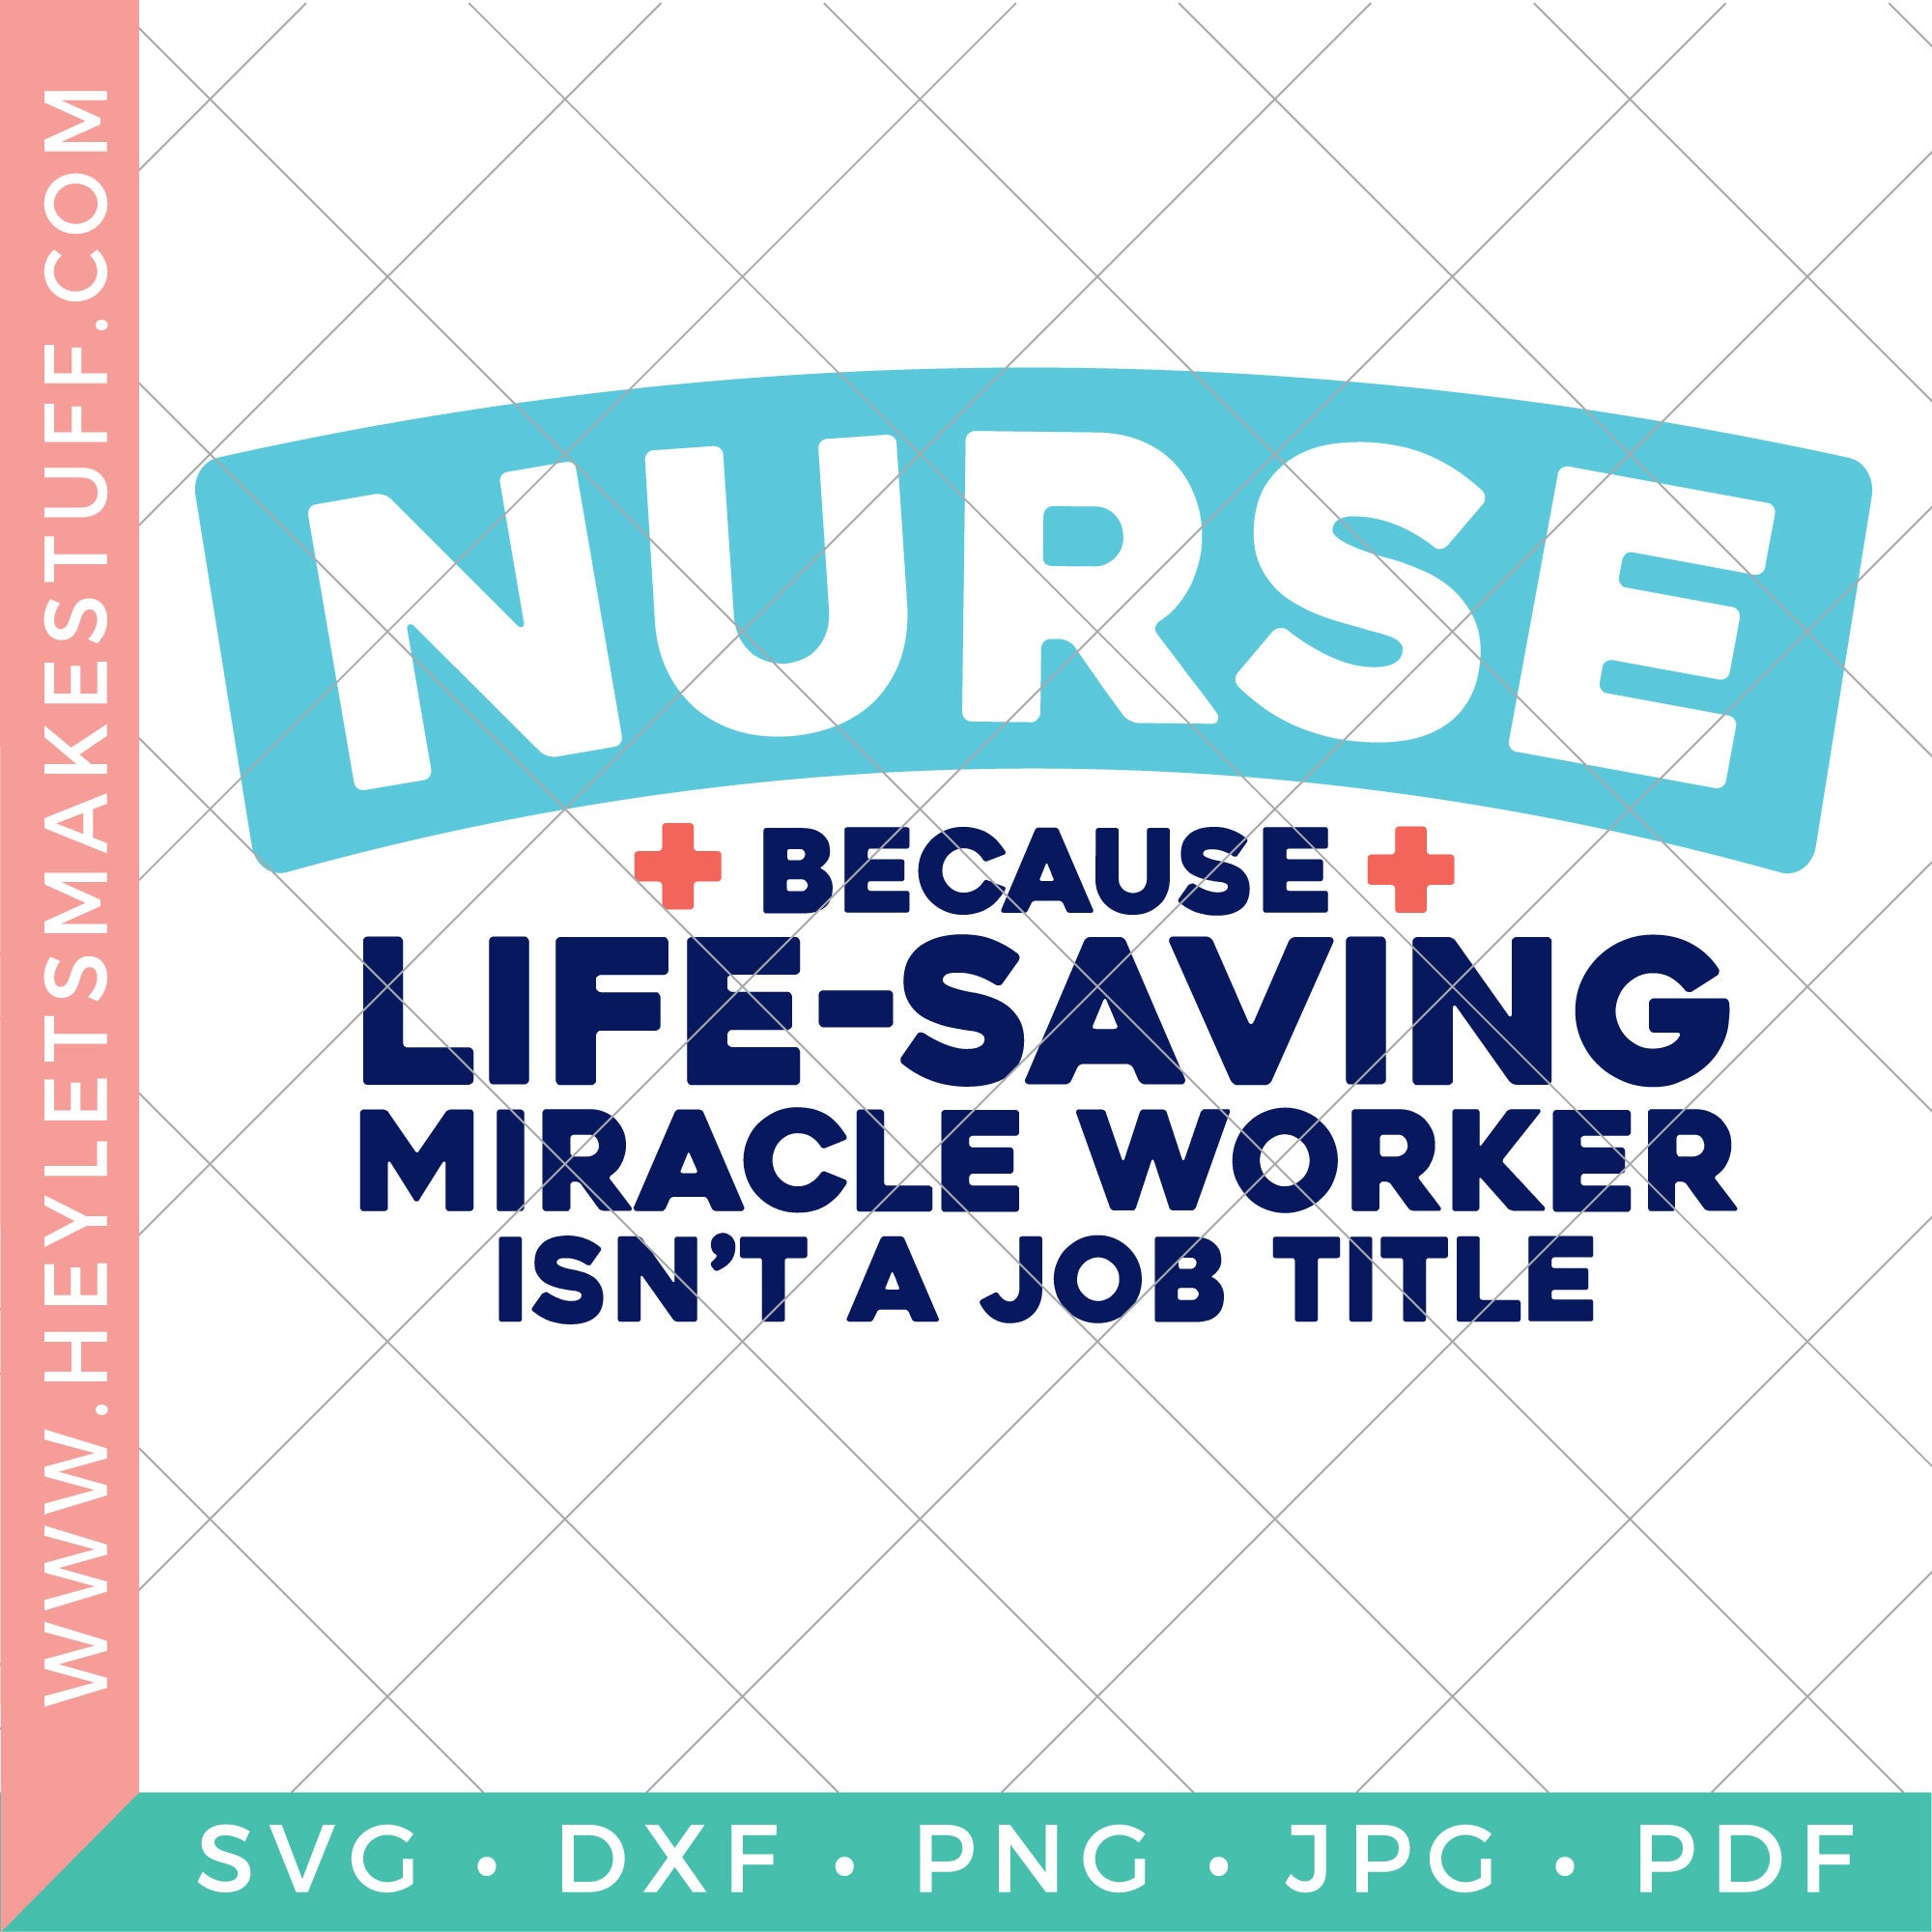 Nurse Miracle Worker – Hey, Let's Make Stuff